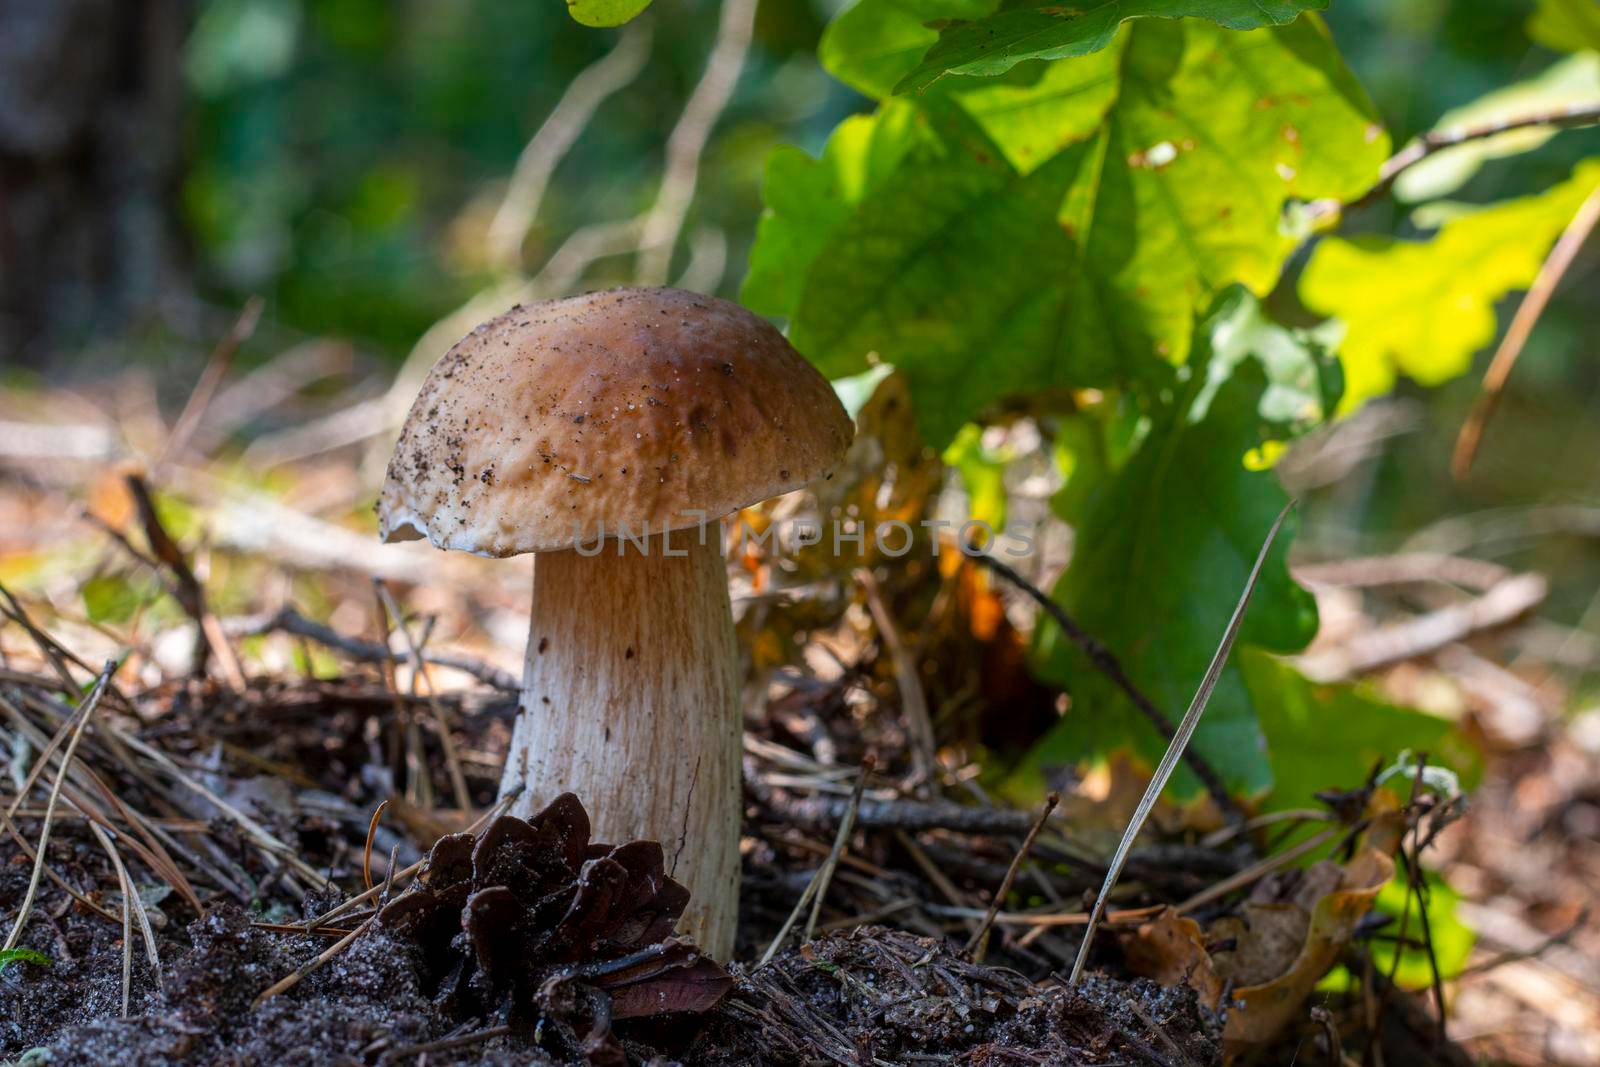 Edible cep mushroom grow in wood. Royal cep mushrooms food. Boletus growing in wild nature